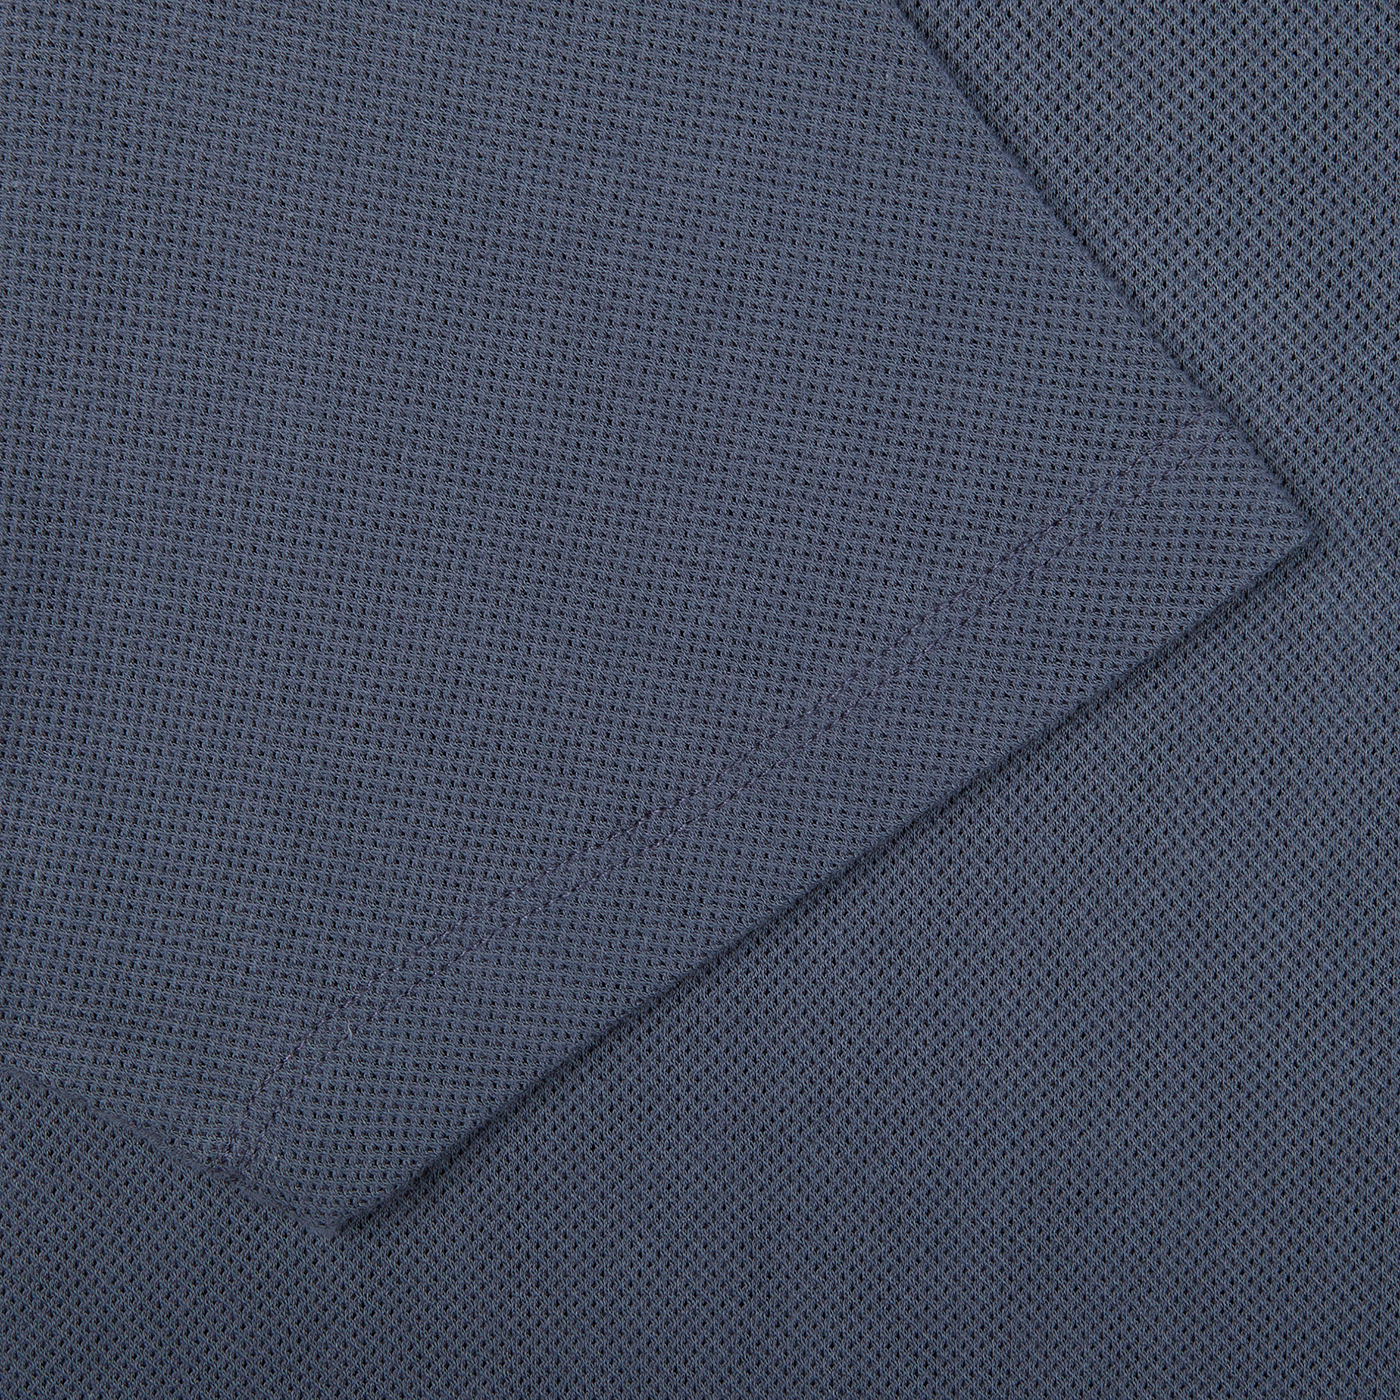 A close up of a slate blue Sunspel Riviera Polo Shirt.